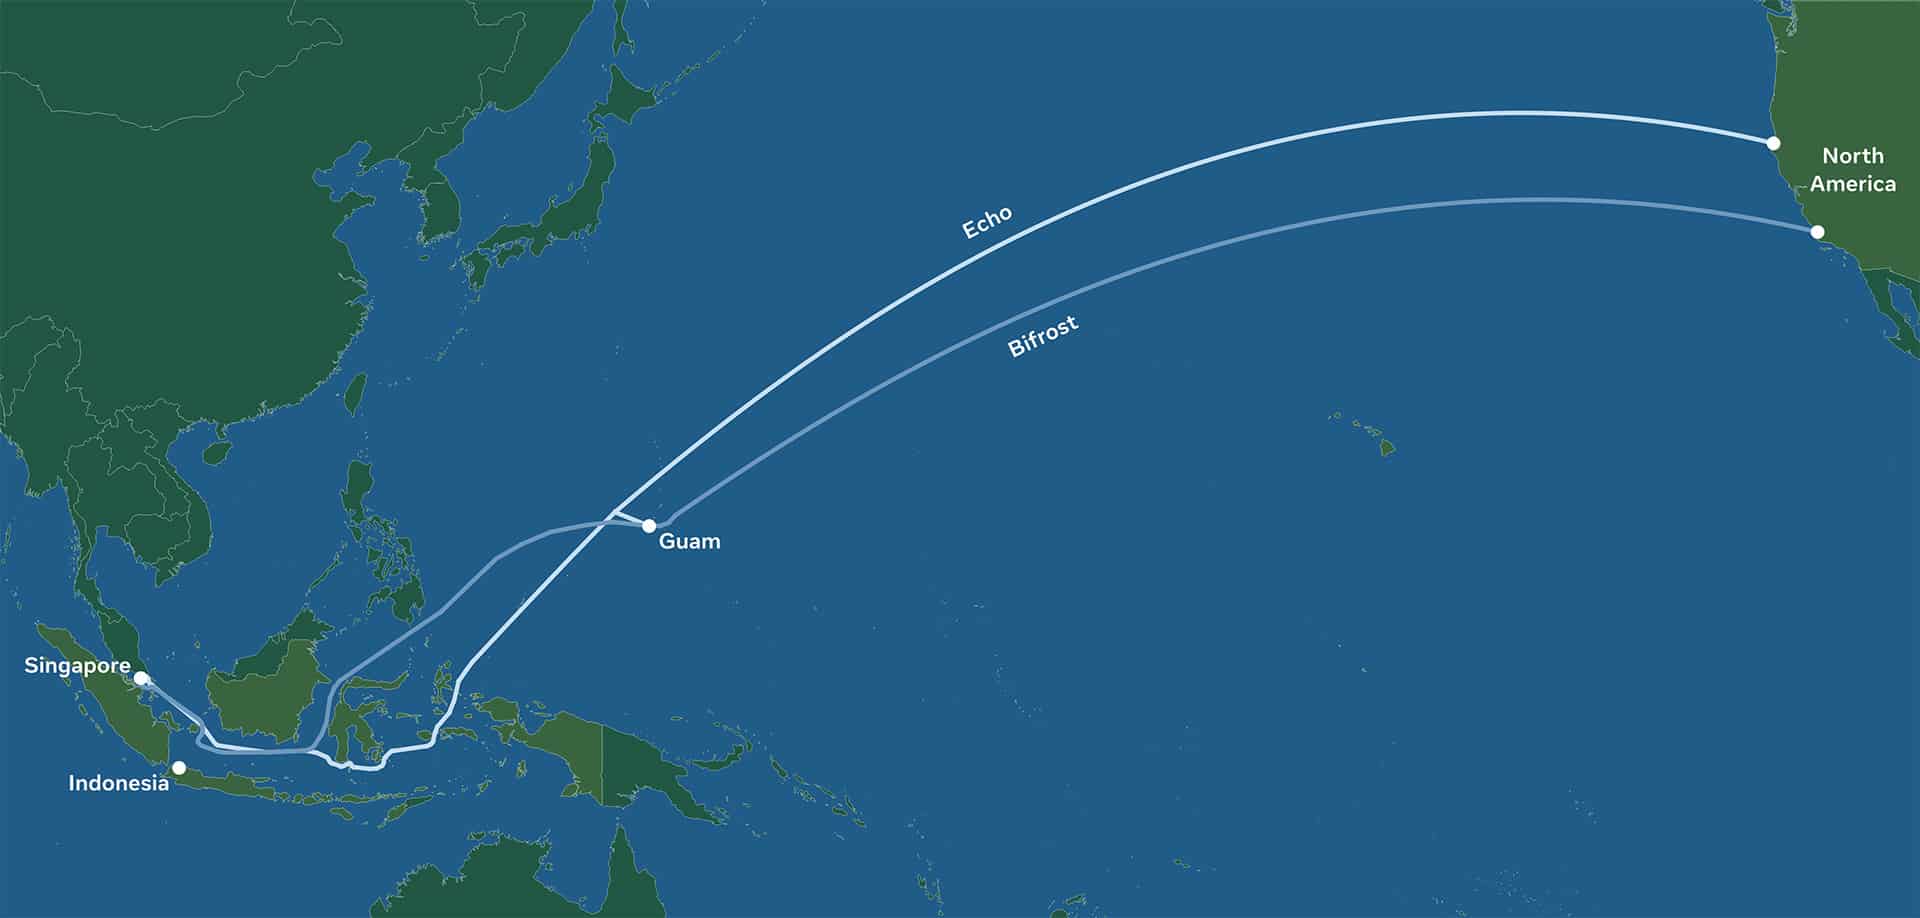 Carte des câbles Bifrost et Echo construits par Facebook et Google qui reliront l'Amérique du Nord et l'Asie du Pacifique.